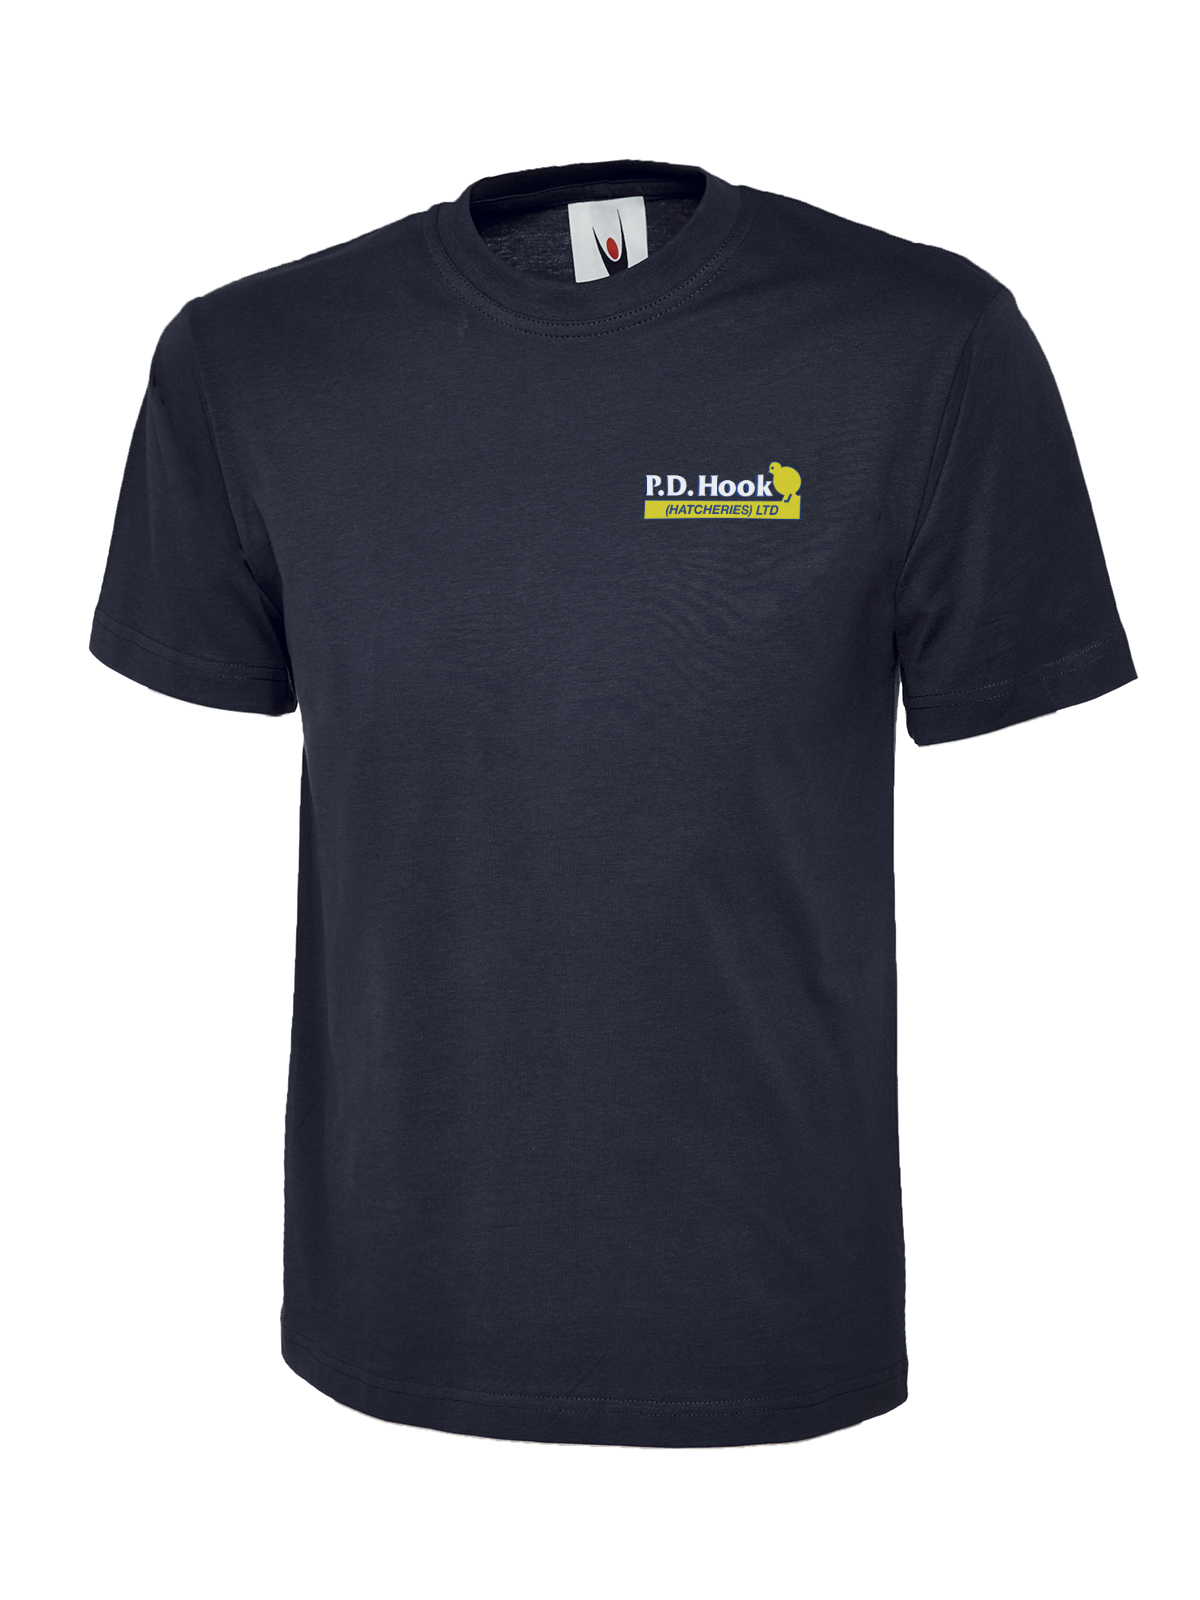 P D Hook (Hatcheries) Ltd - T-Shirt, Navy - Size 4XL